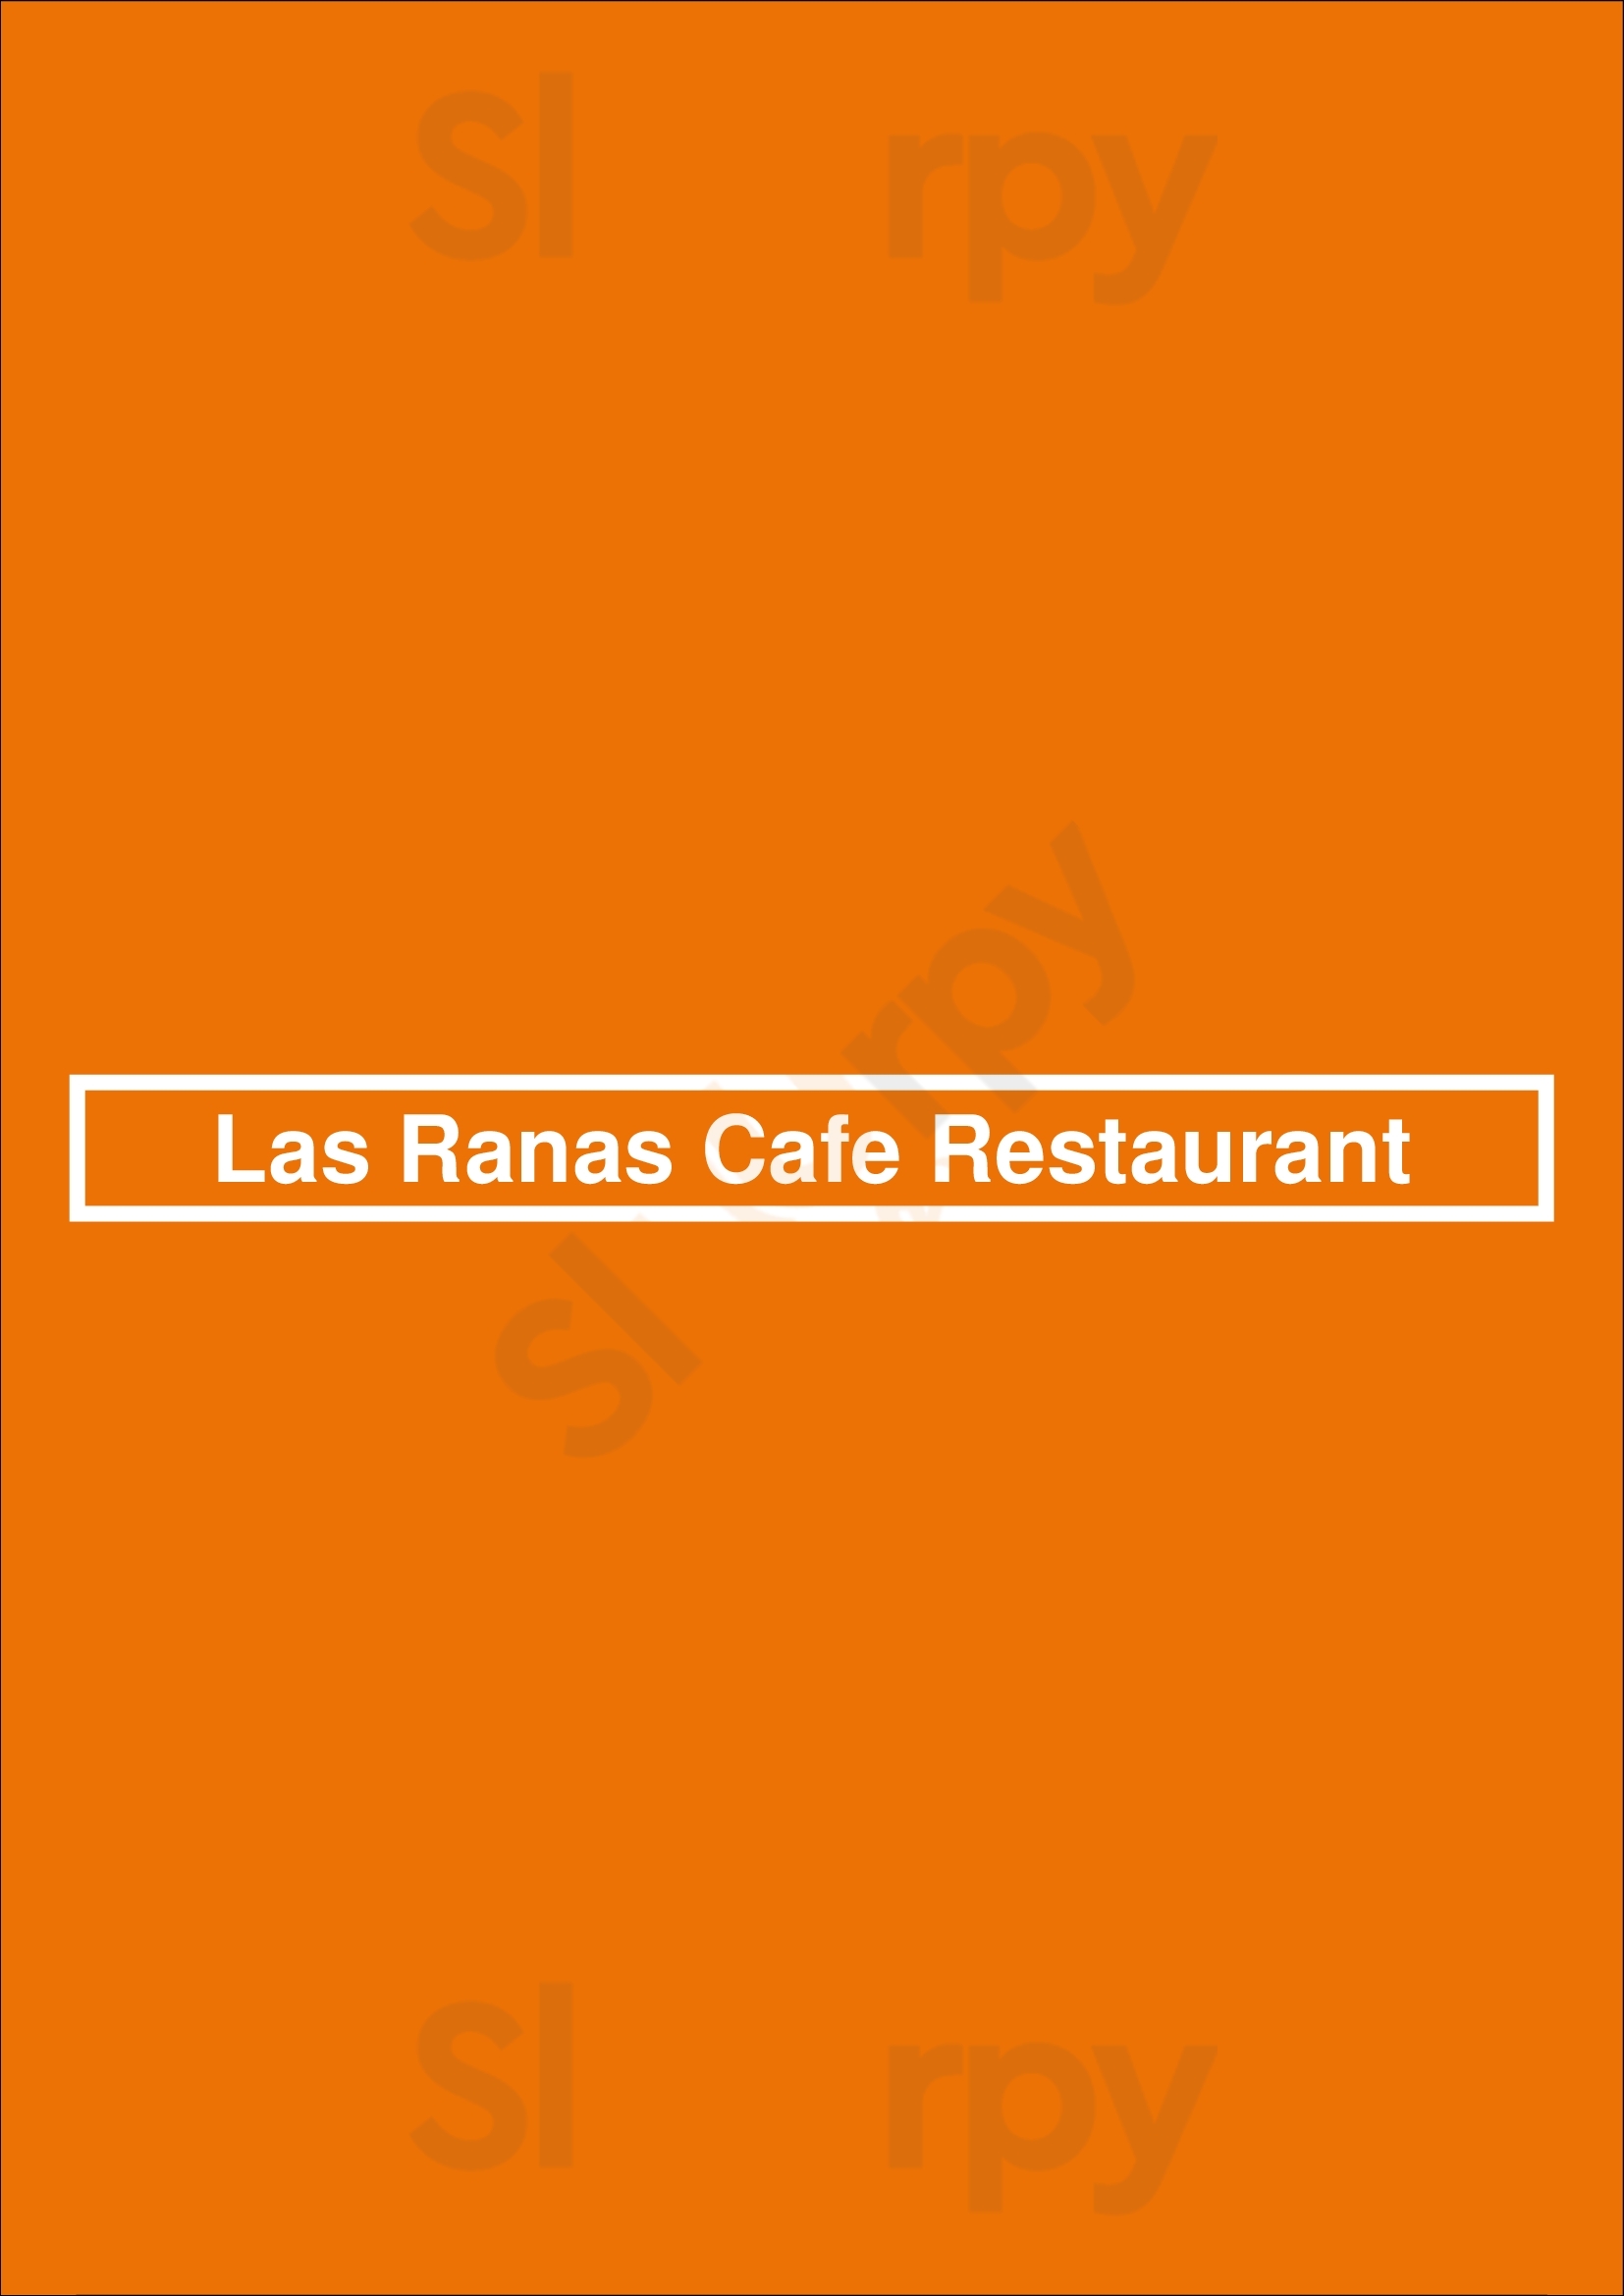 Las Ranas Cafe Restaurant Los Angeles Menu - 1